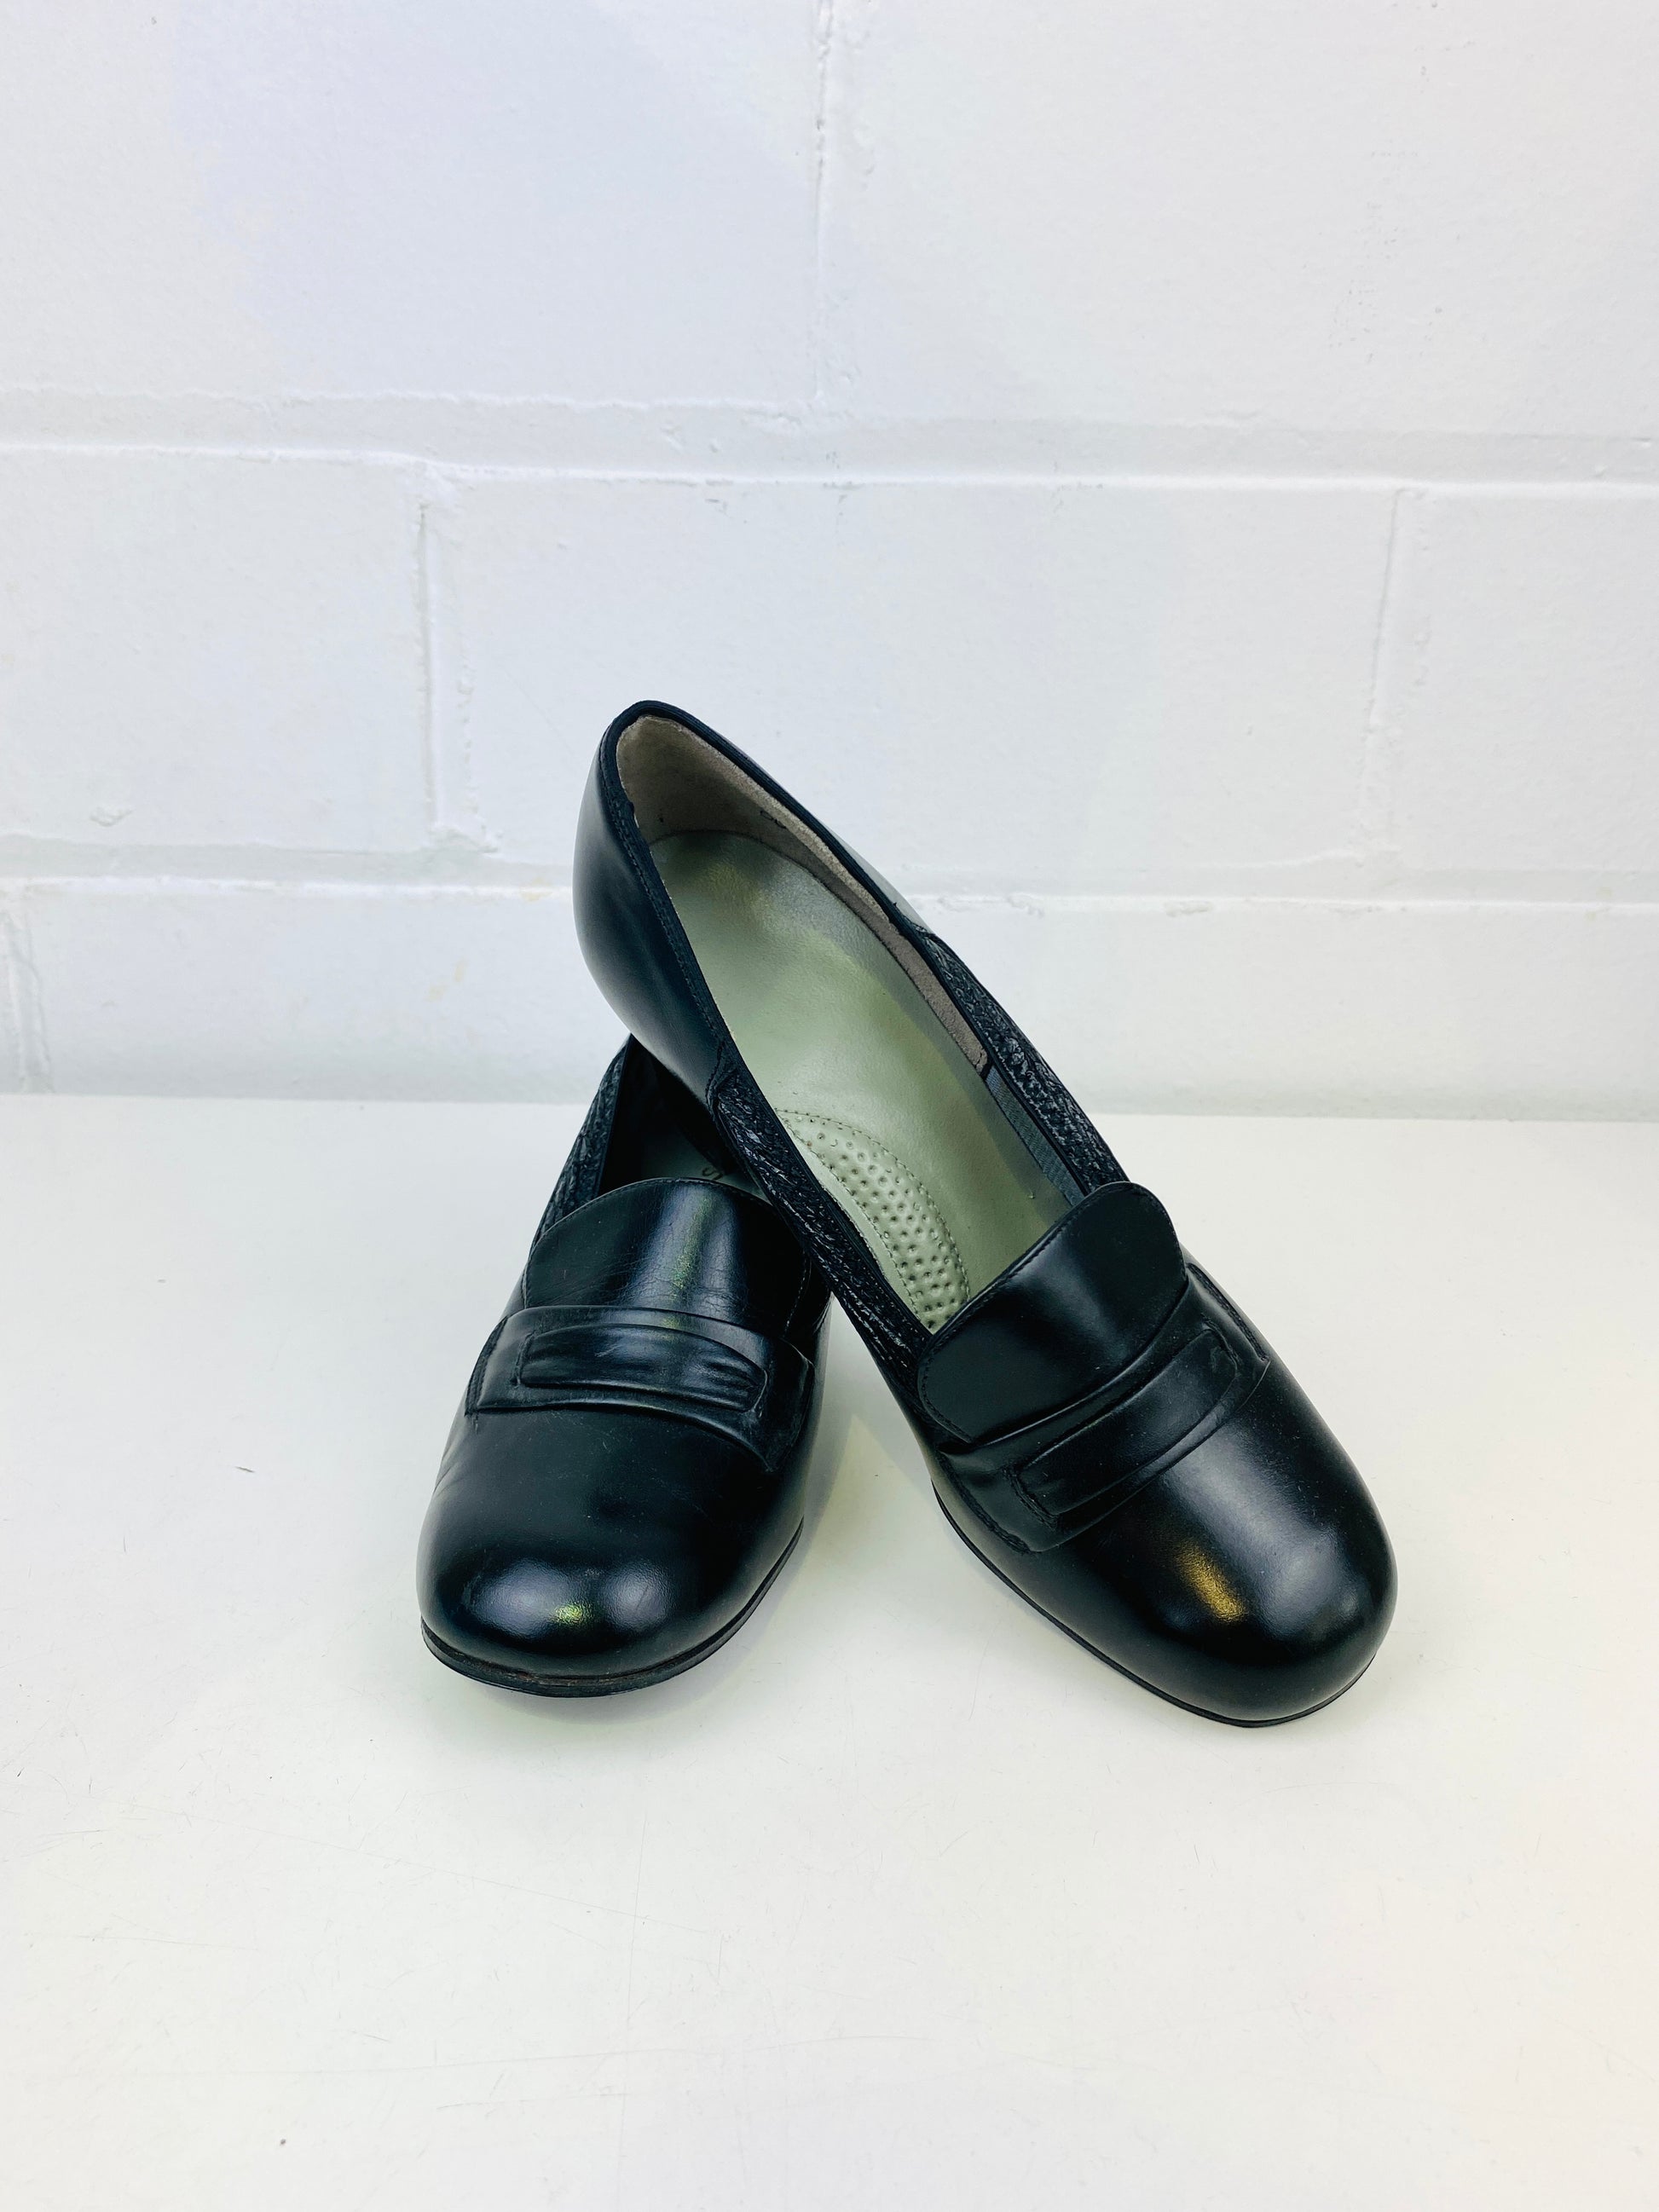 Vintage Deadstock Shoes, Women's 1980s Black Leather Cuban Heel Pumps, NOS, 7740